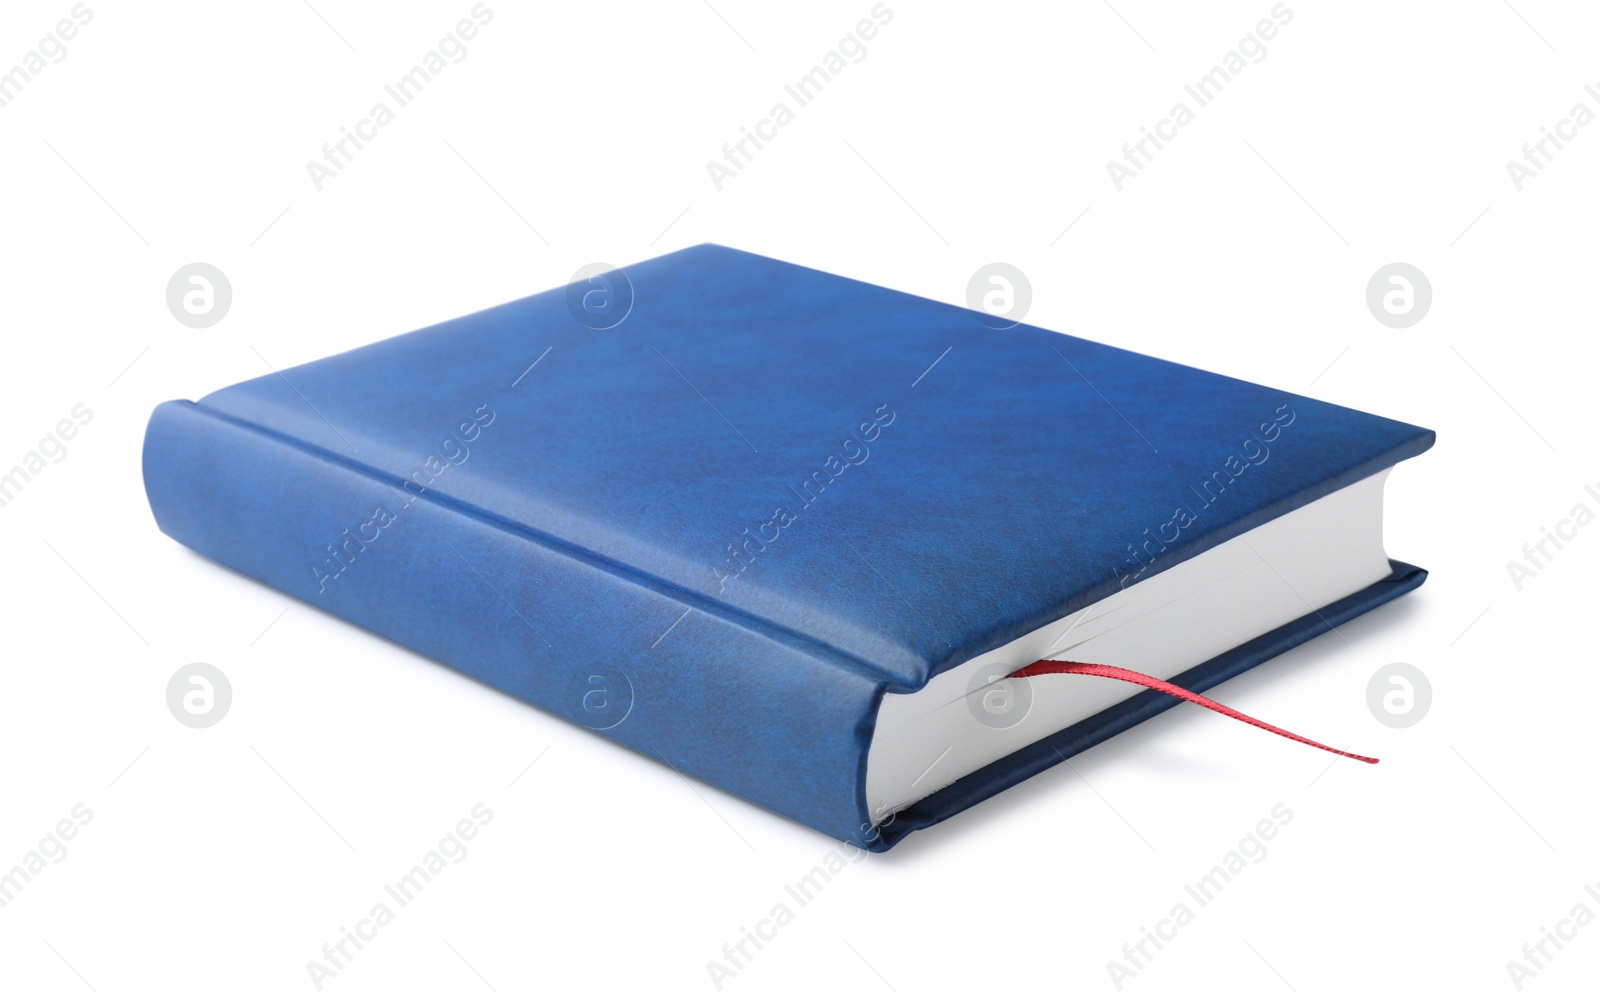 Photo of Stylish blue hardcover notebook isolated on white